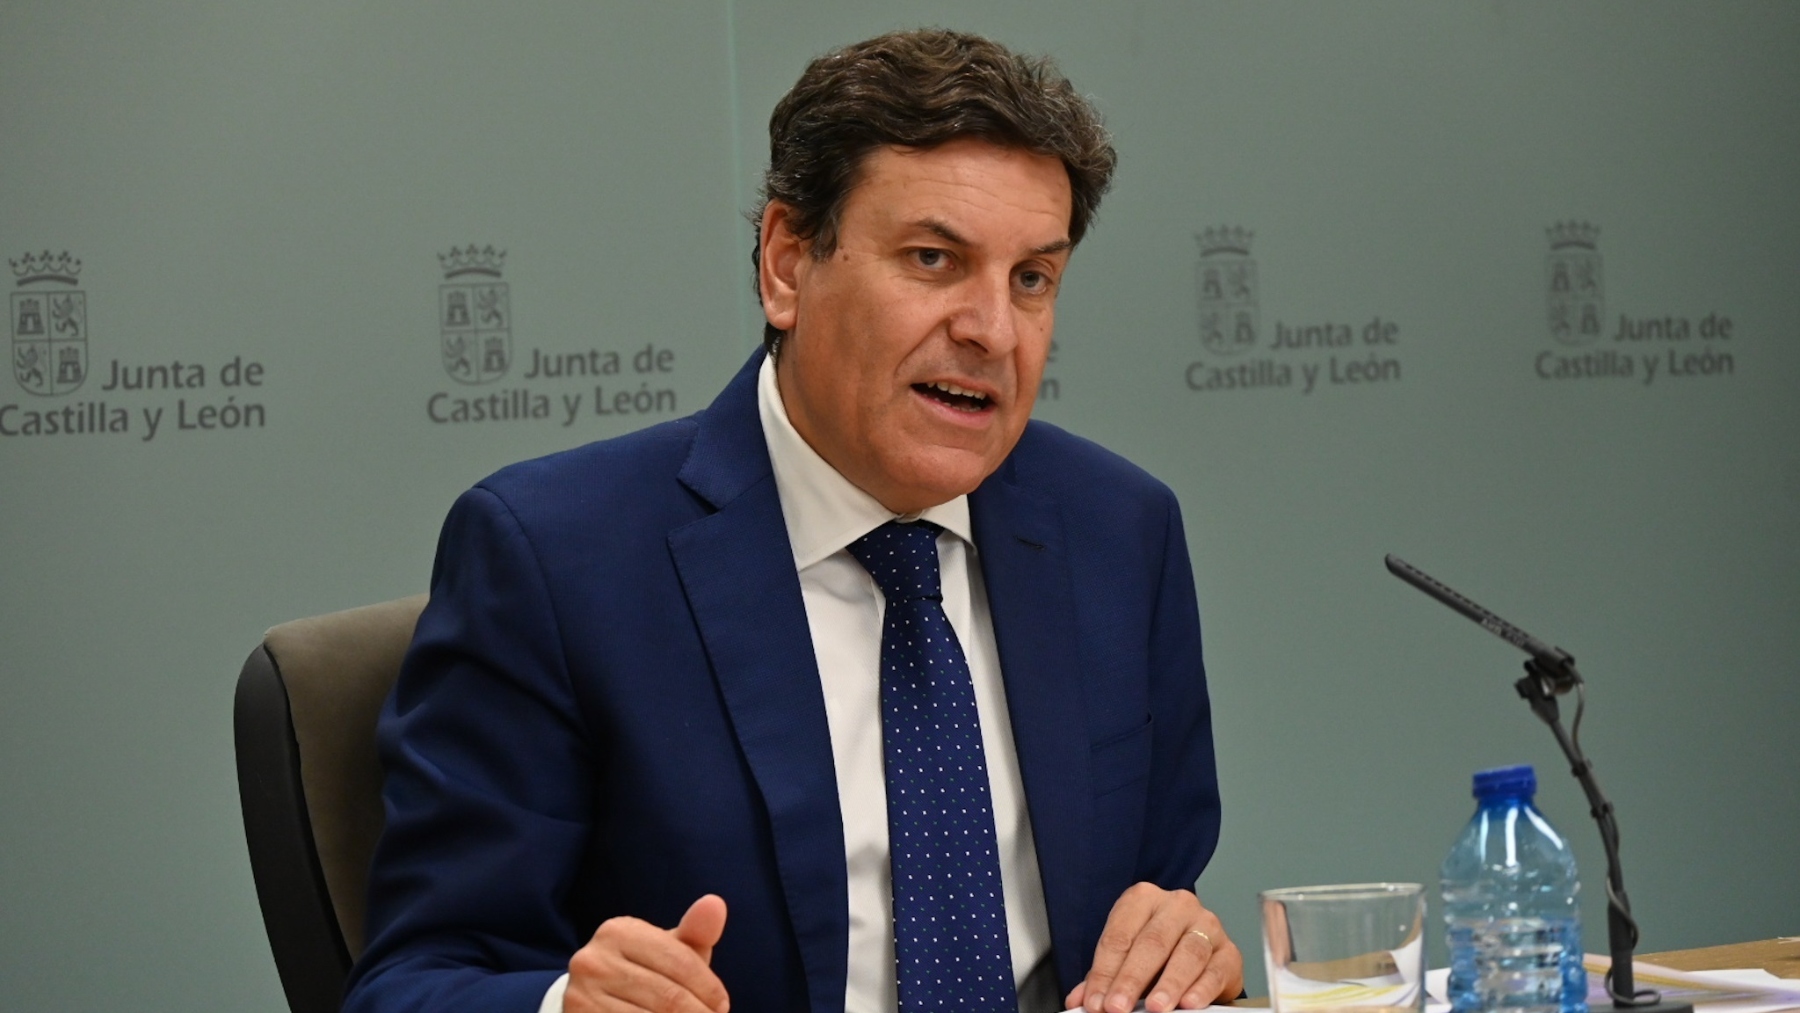 El portavoz de la Junta de Castilla y León, Carlos Fernández Carriedo. (EP)